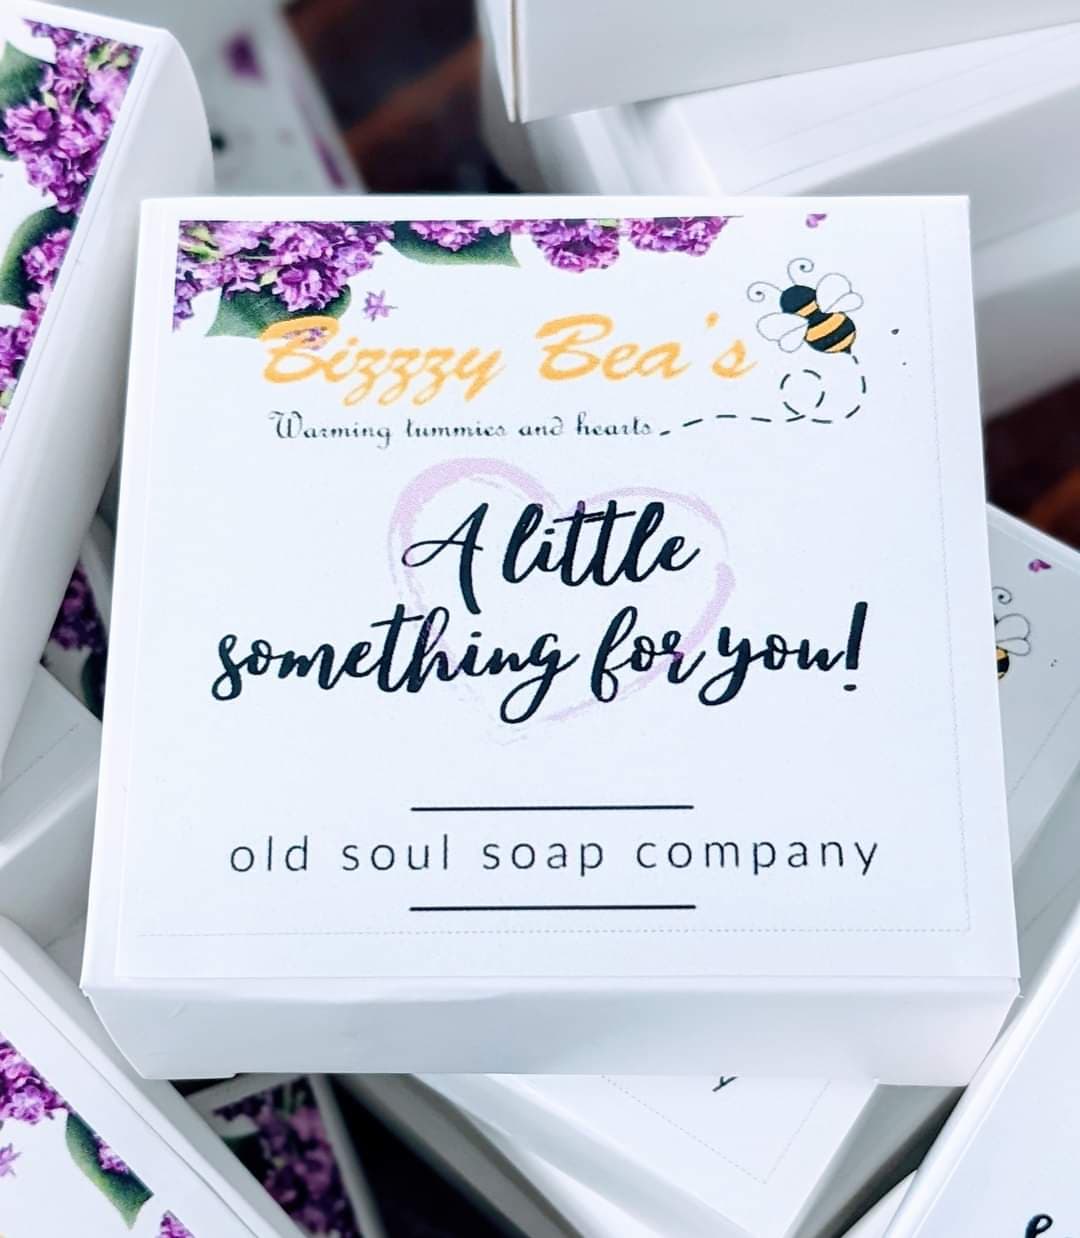 Old Soul Soap Company